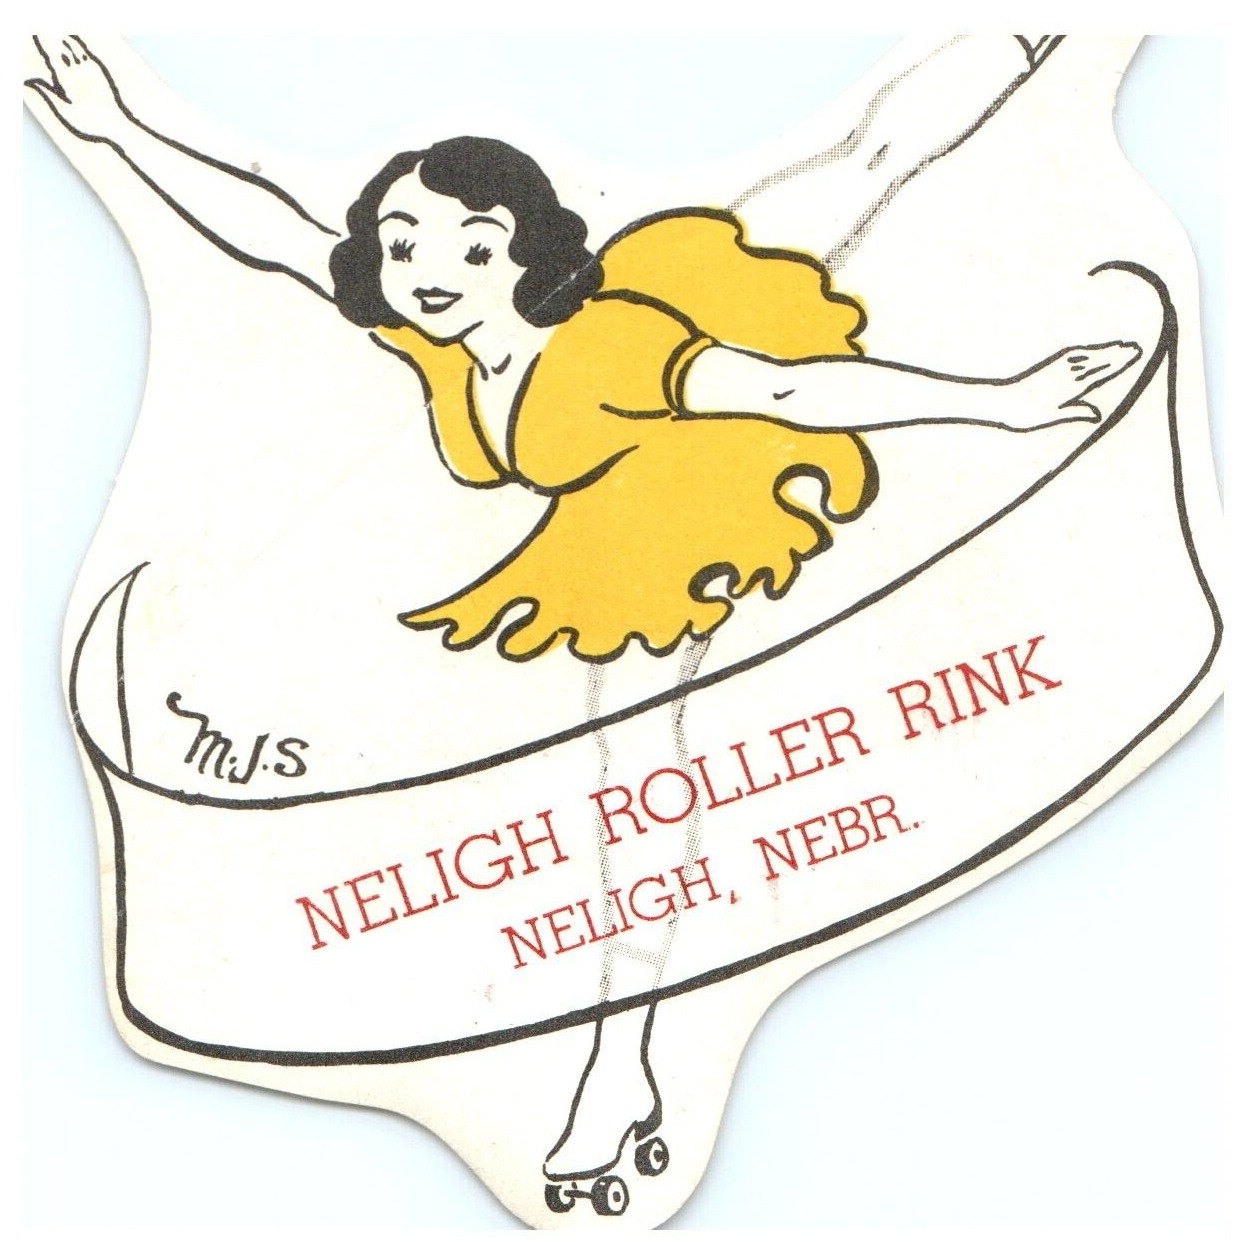 MJS Signed Original Vintage 1940s Roller Skating Rink Sticker Neligh NE s12